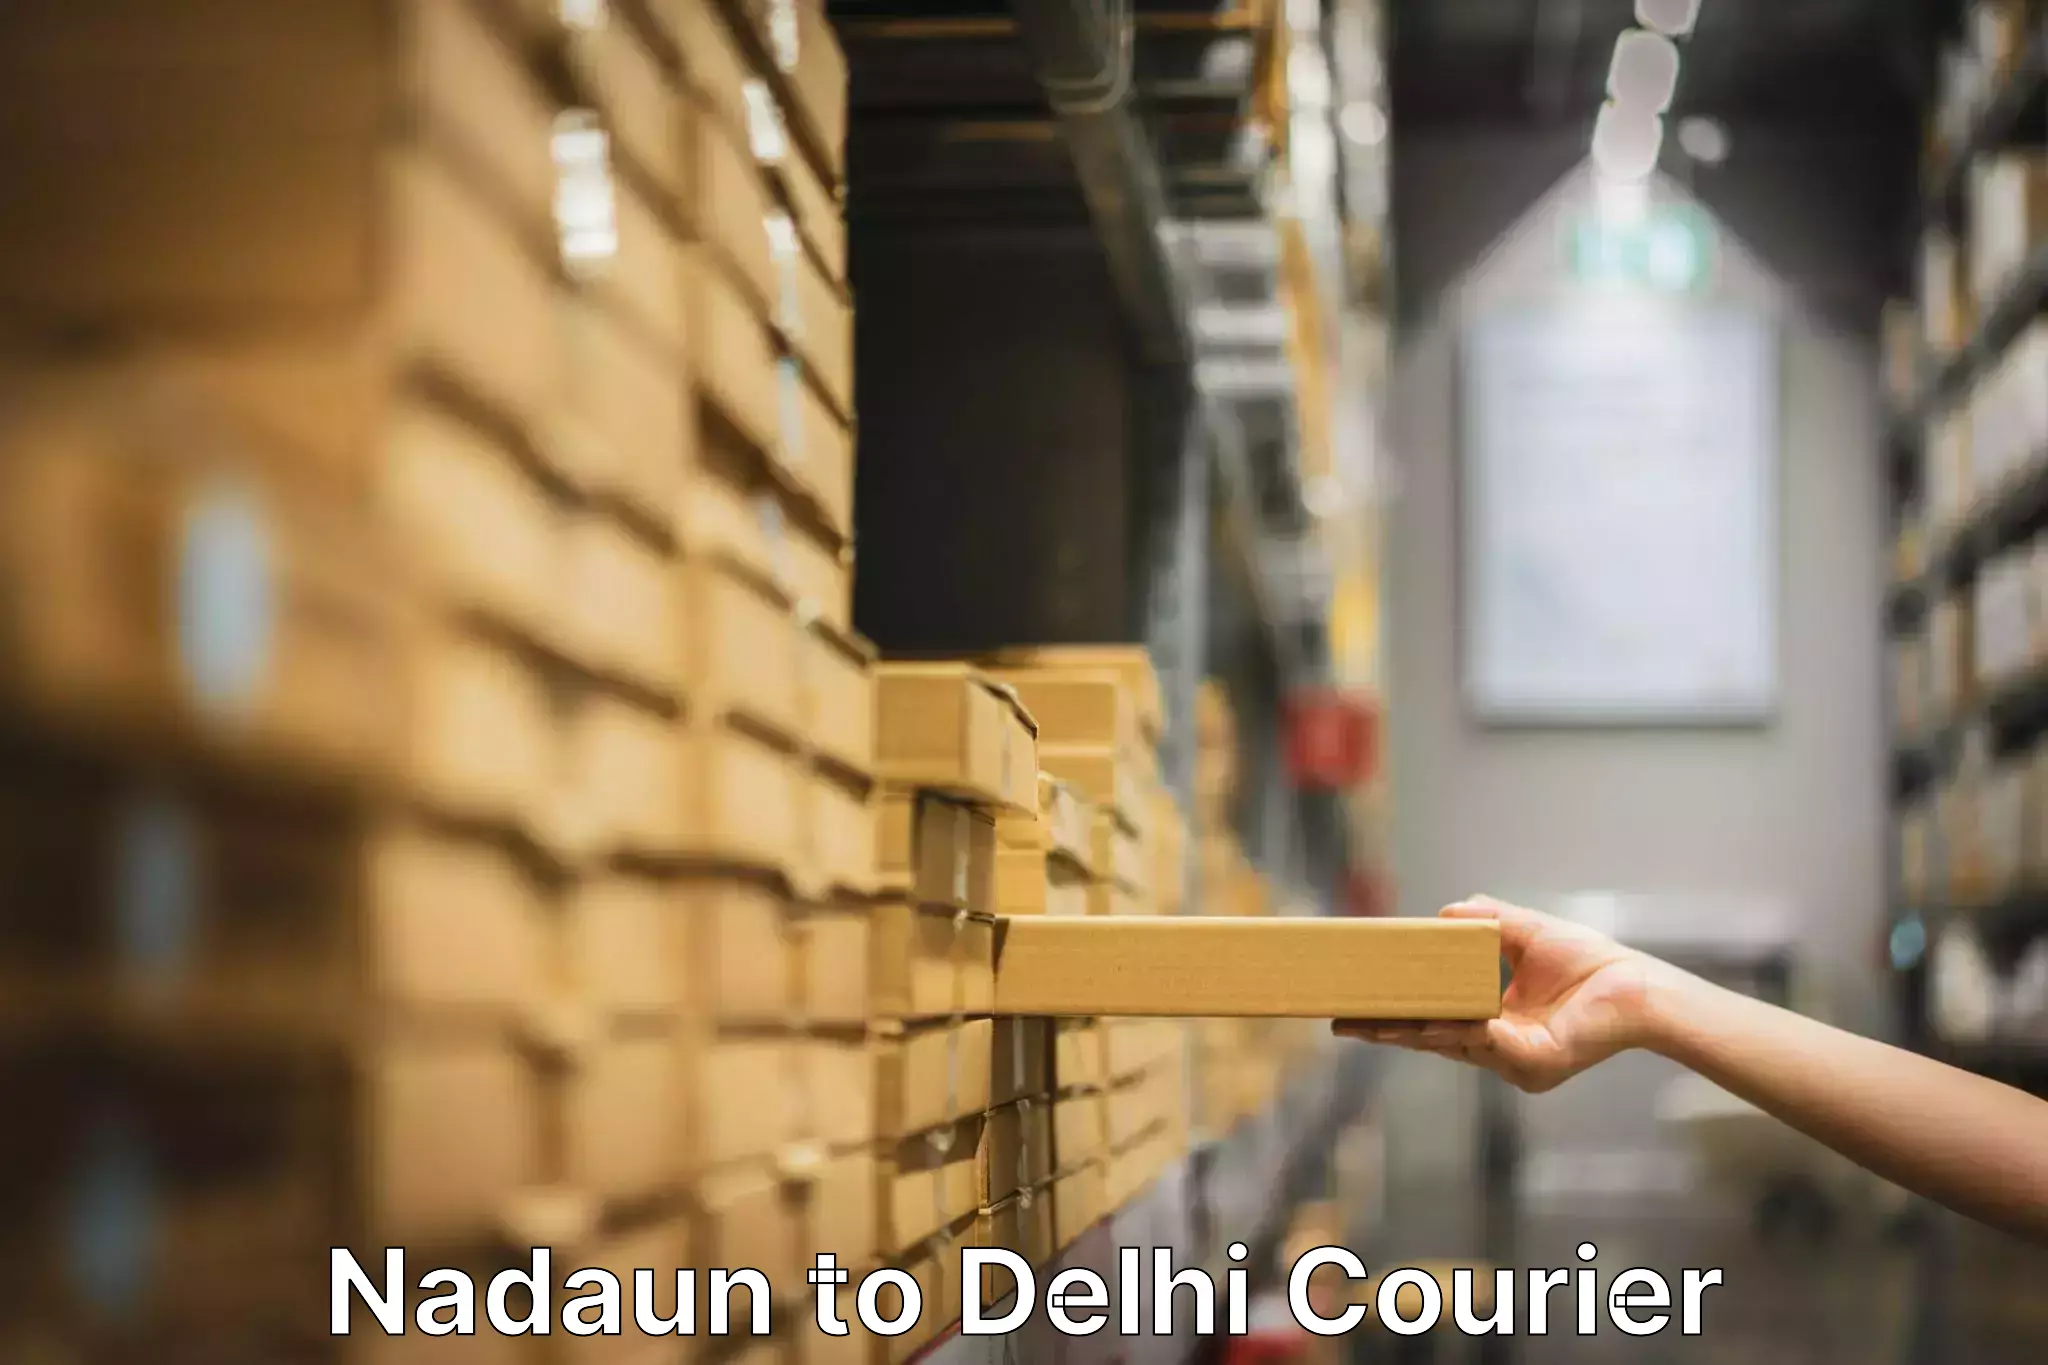 Furniture moving plans Nadaun to Delhi